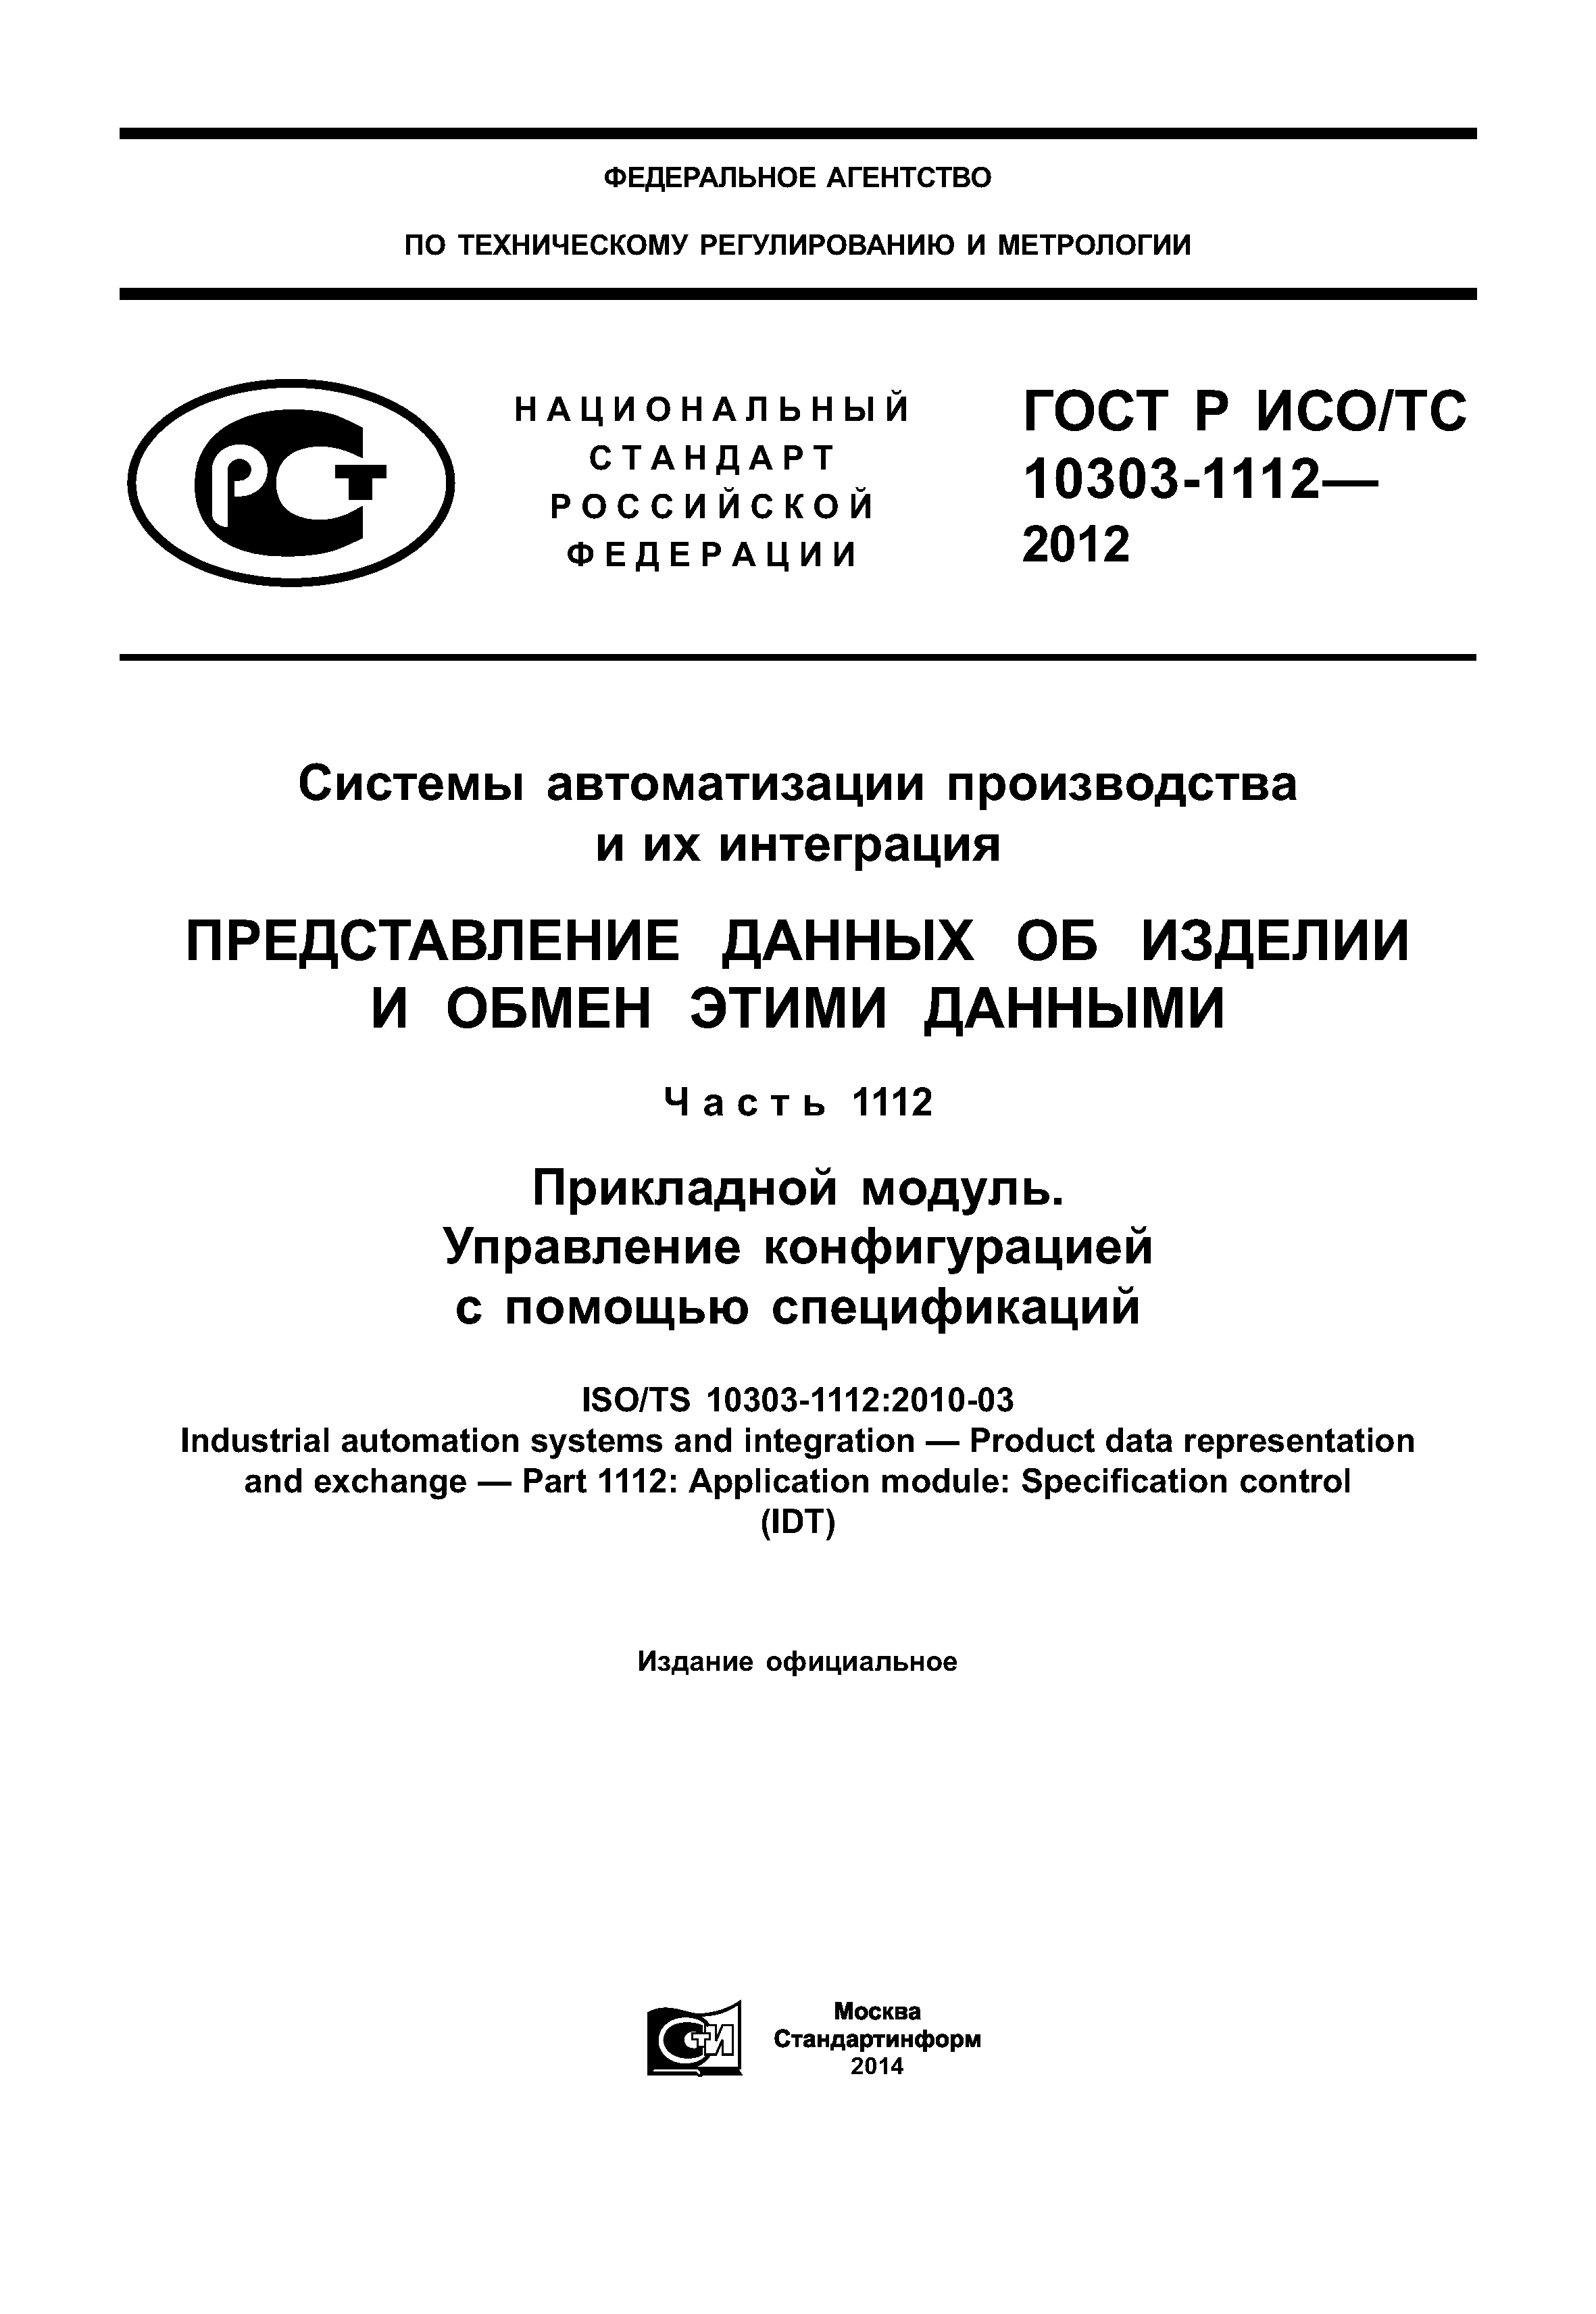 ГОСТ Р ИСО/ТС 10303-1112-2012